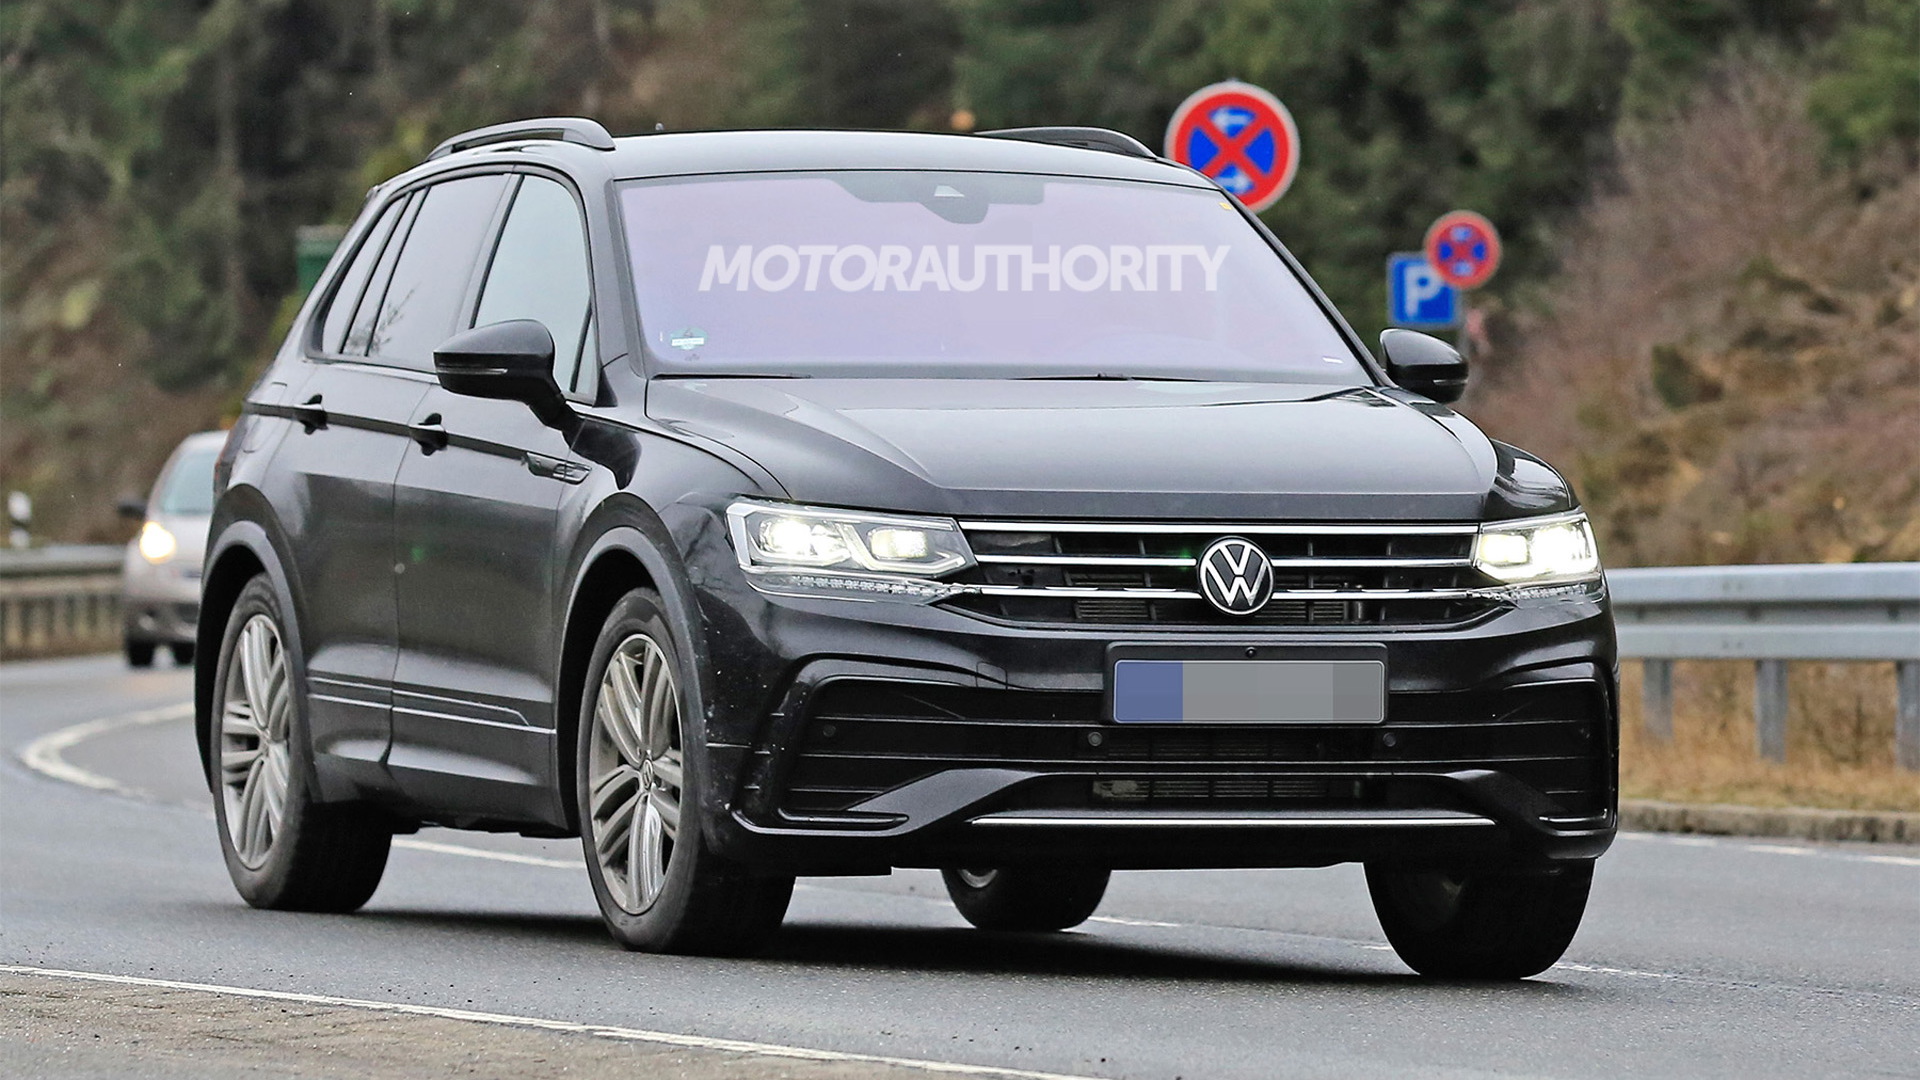 2021 Volkswagen Tiguan facelift spy shots - Photo credit: S. Baldauf/SB-Medien